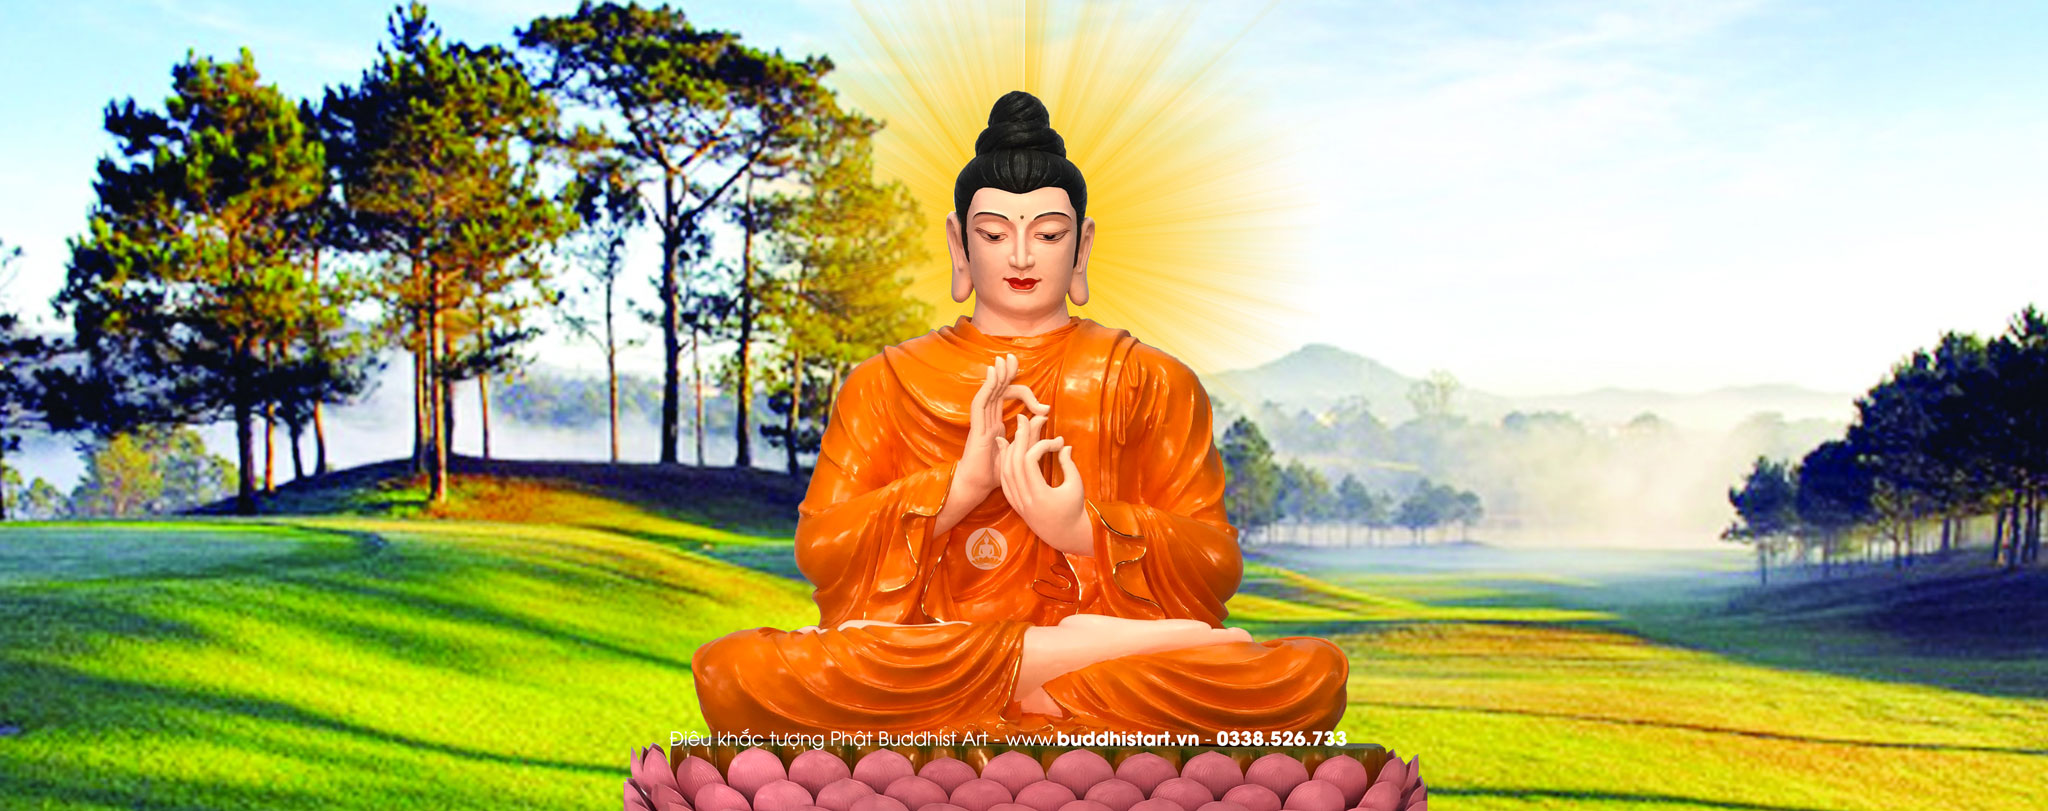 Top 100+ hình Phật, Hình ảnh Phật đẹp tuyệt vời nhất rất chất lượng Buddhist Art ...